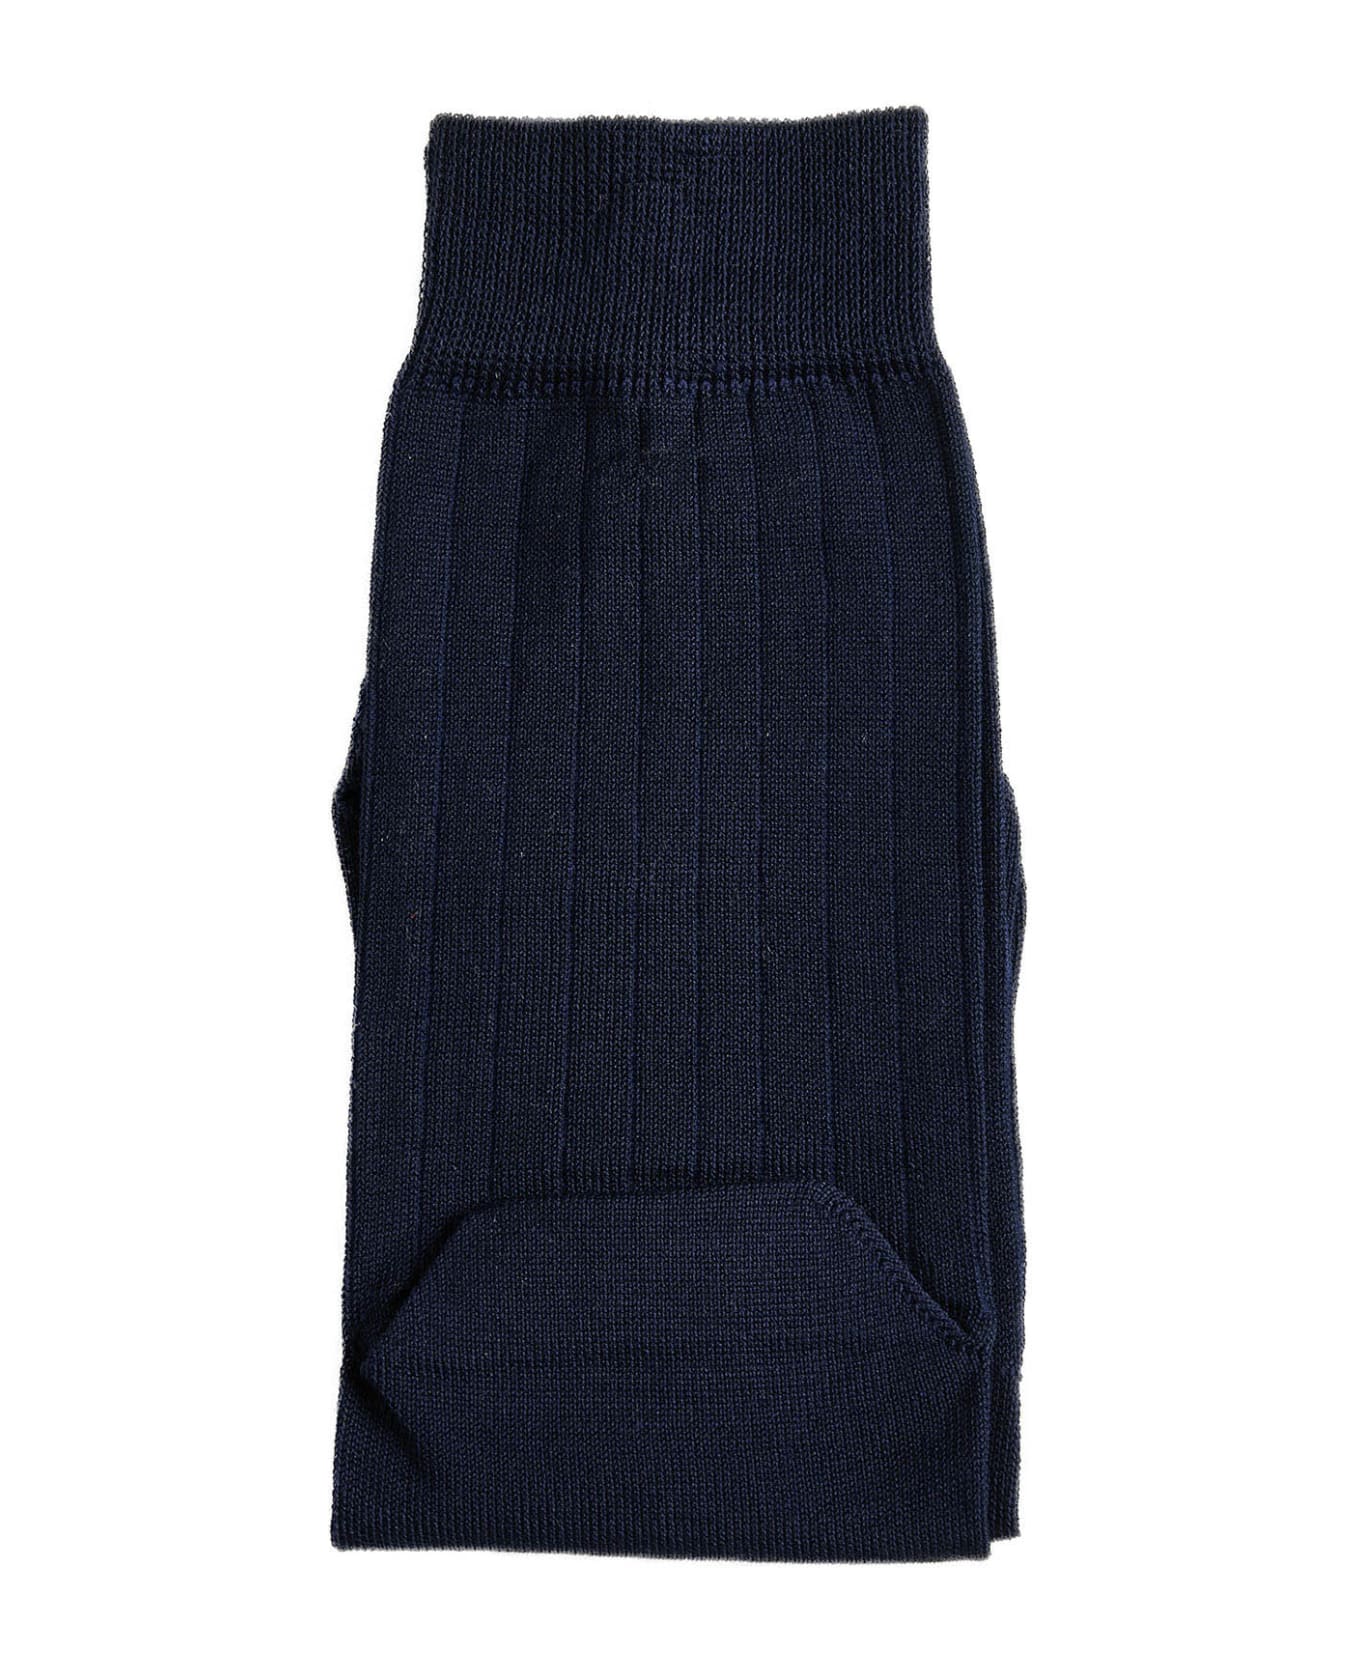 Maison Margiela Underwear - Navy blue スカート